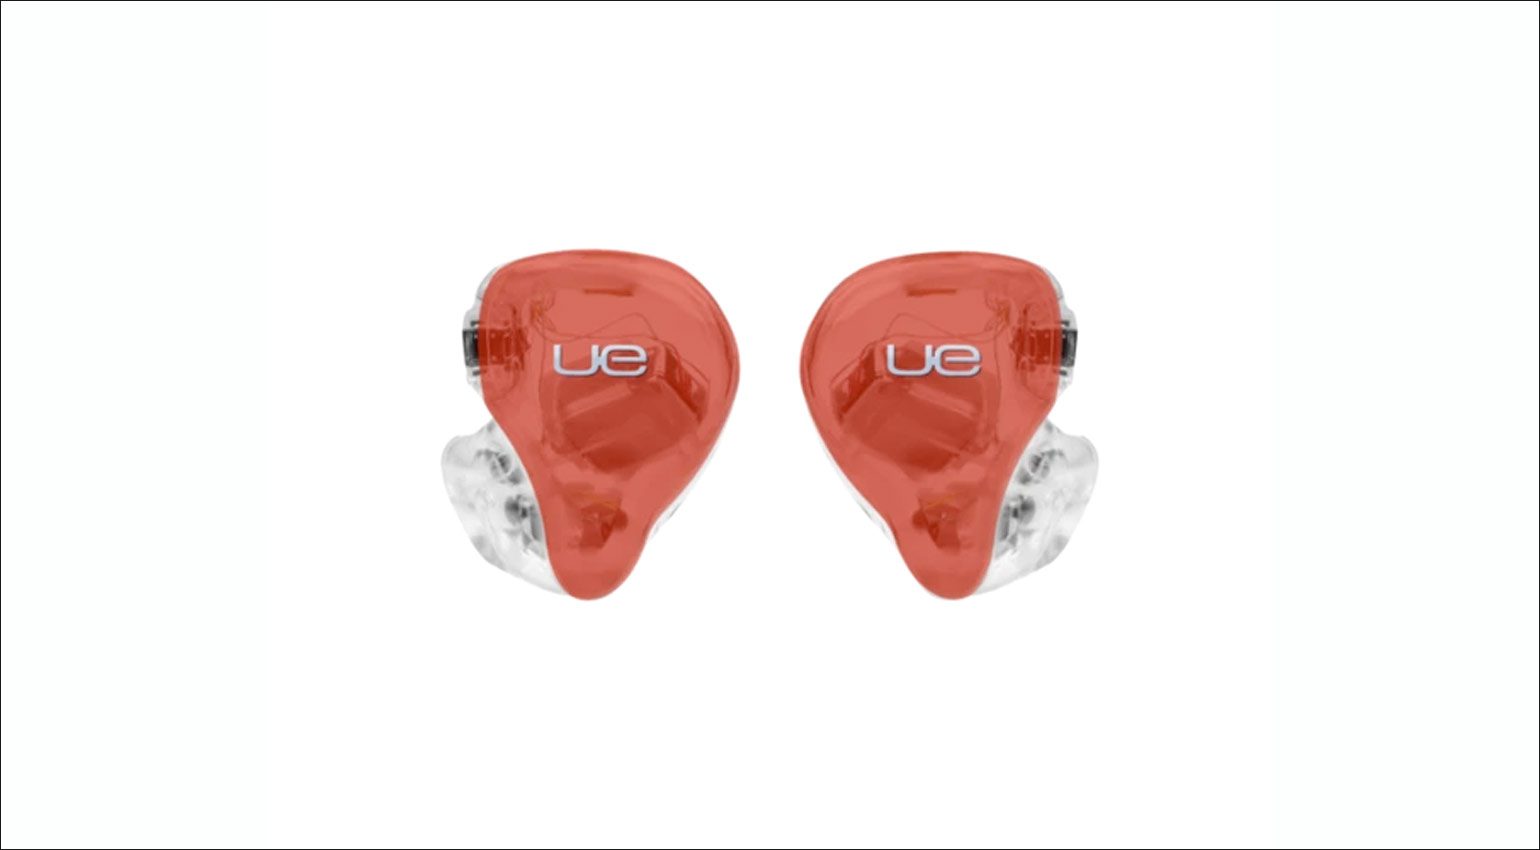 Ultimate Ears UE 7 Pro